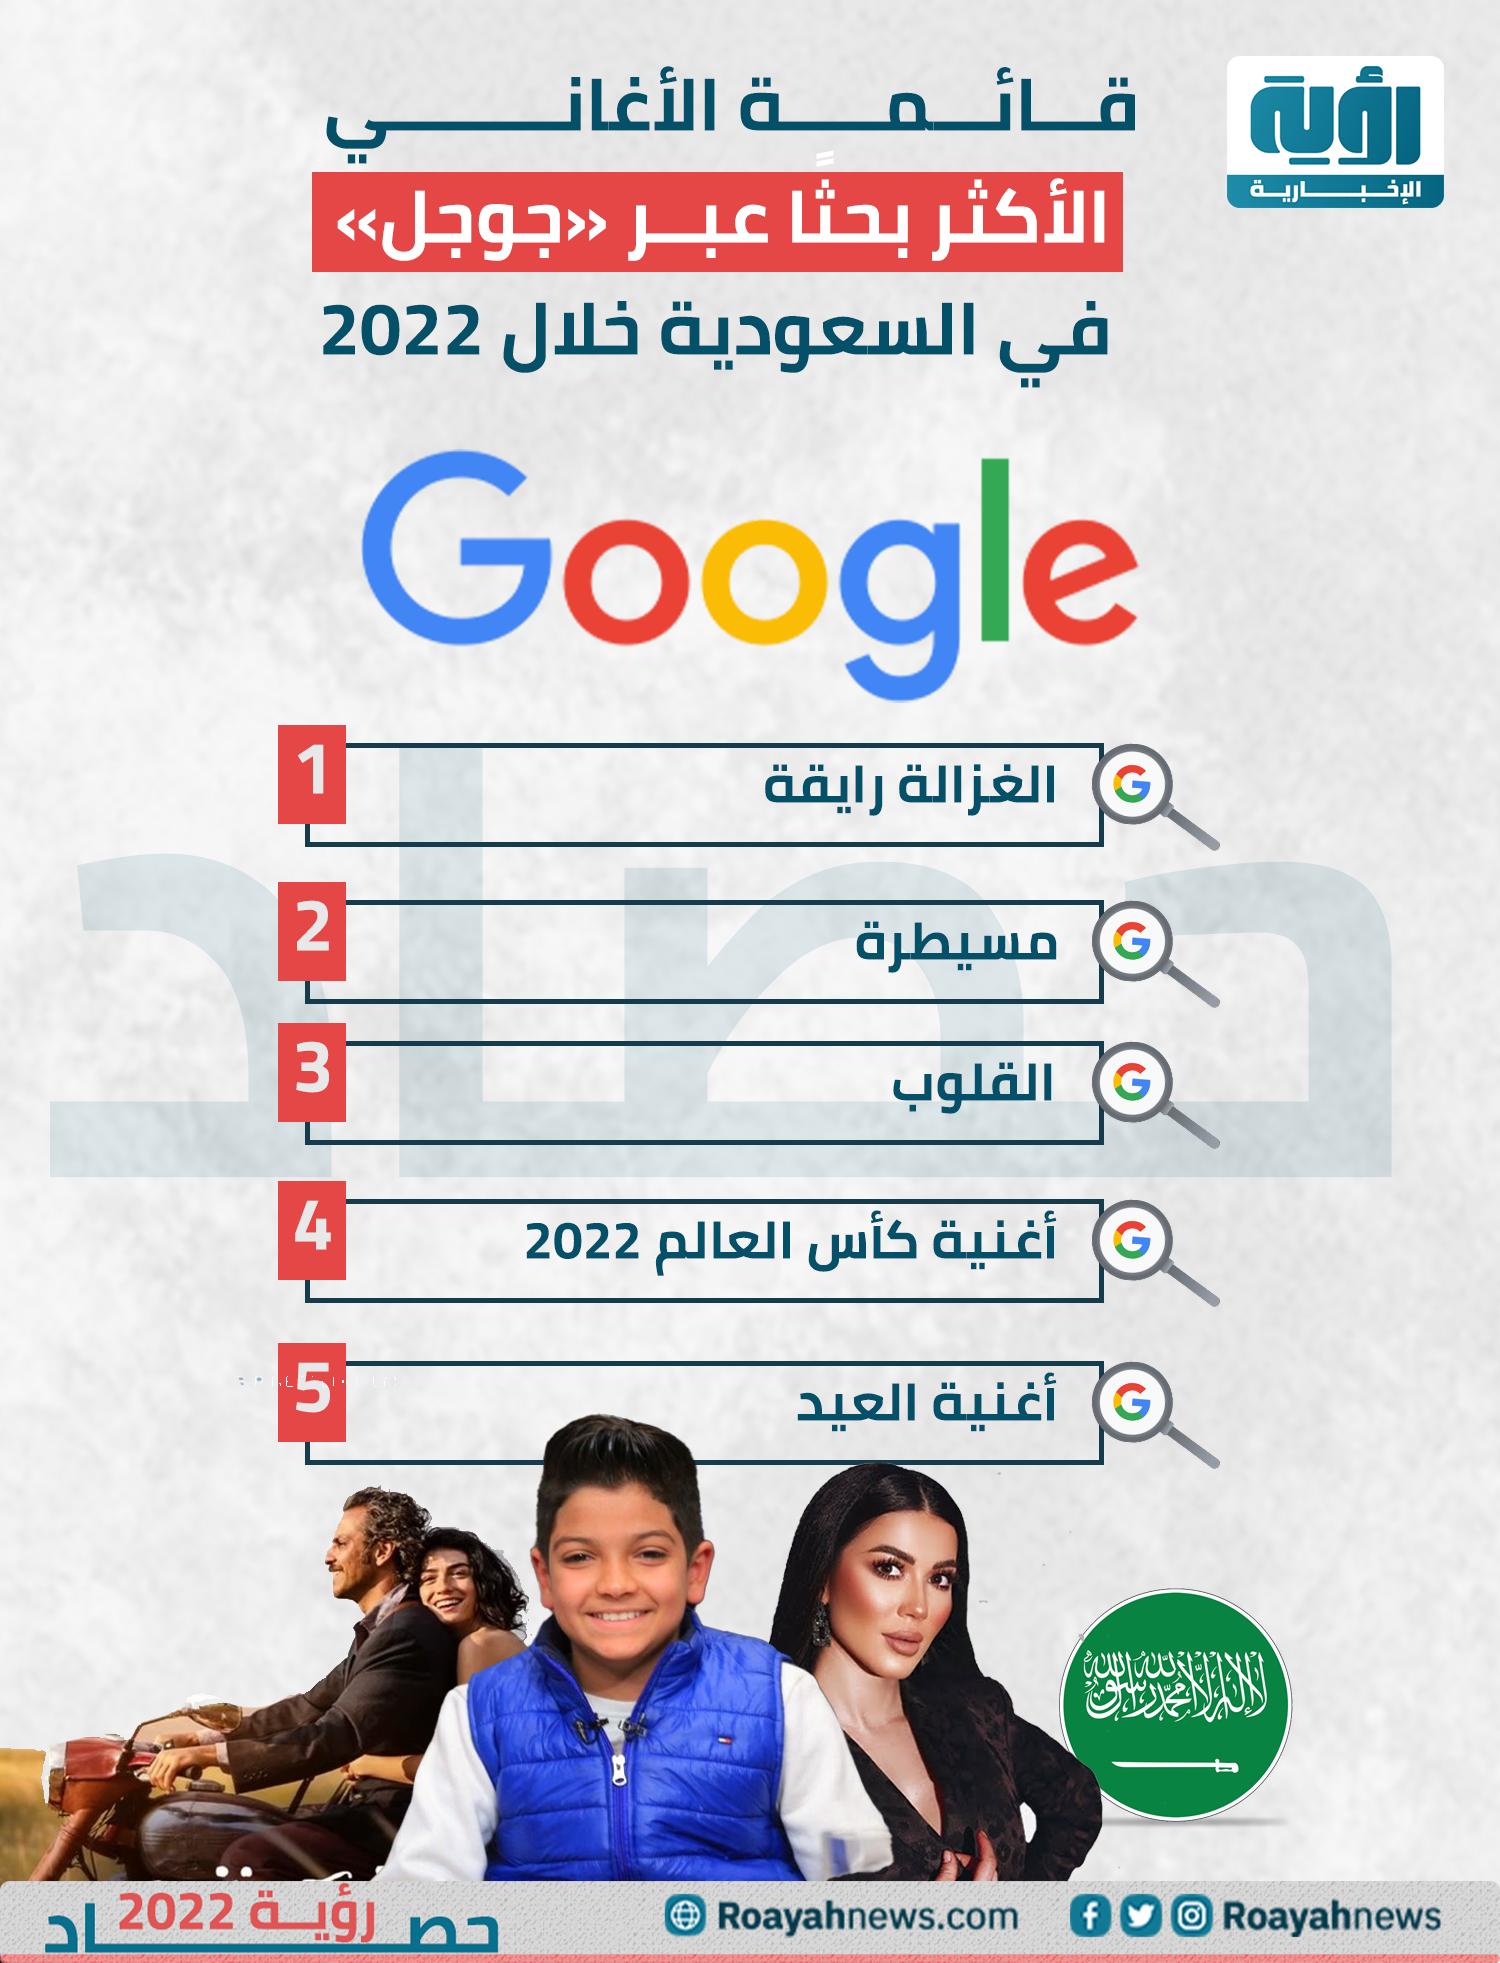 قائمة أكثر الأغاني بحثًا عبر جوجل في االسعودية خلال 2022